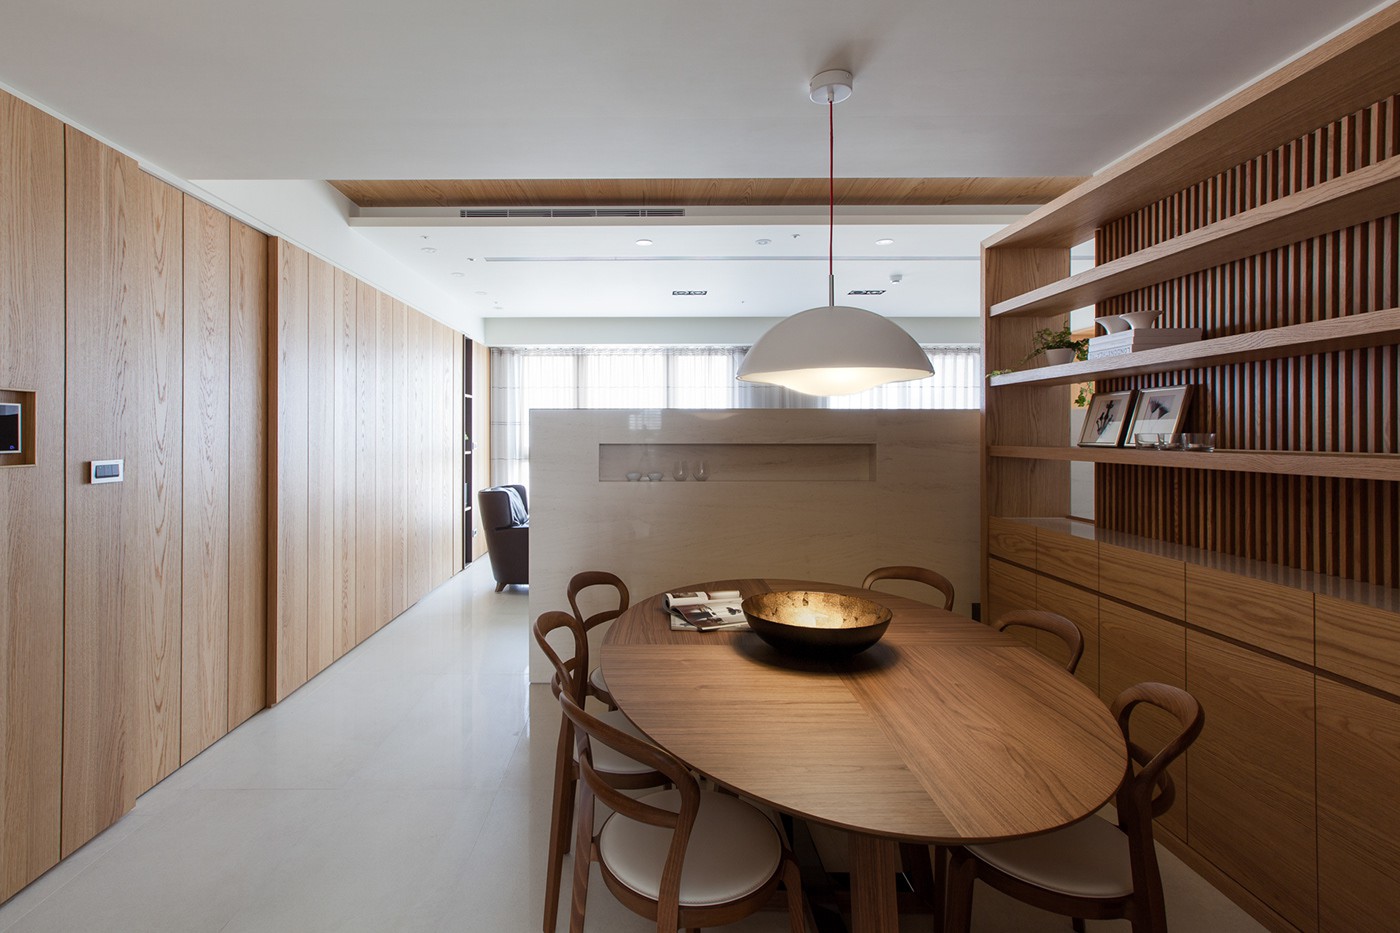 Căn hộ chung cư thiết kế thoáng đẹp như nhà vườn mang đậm chất Nhật Bản - Ảnh 10.